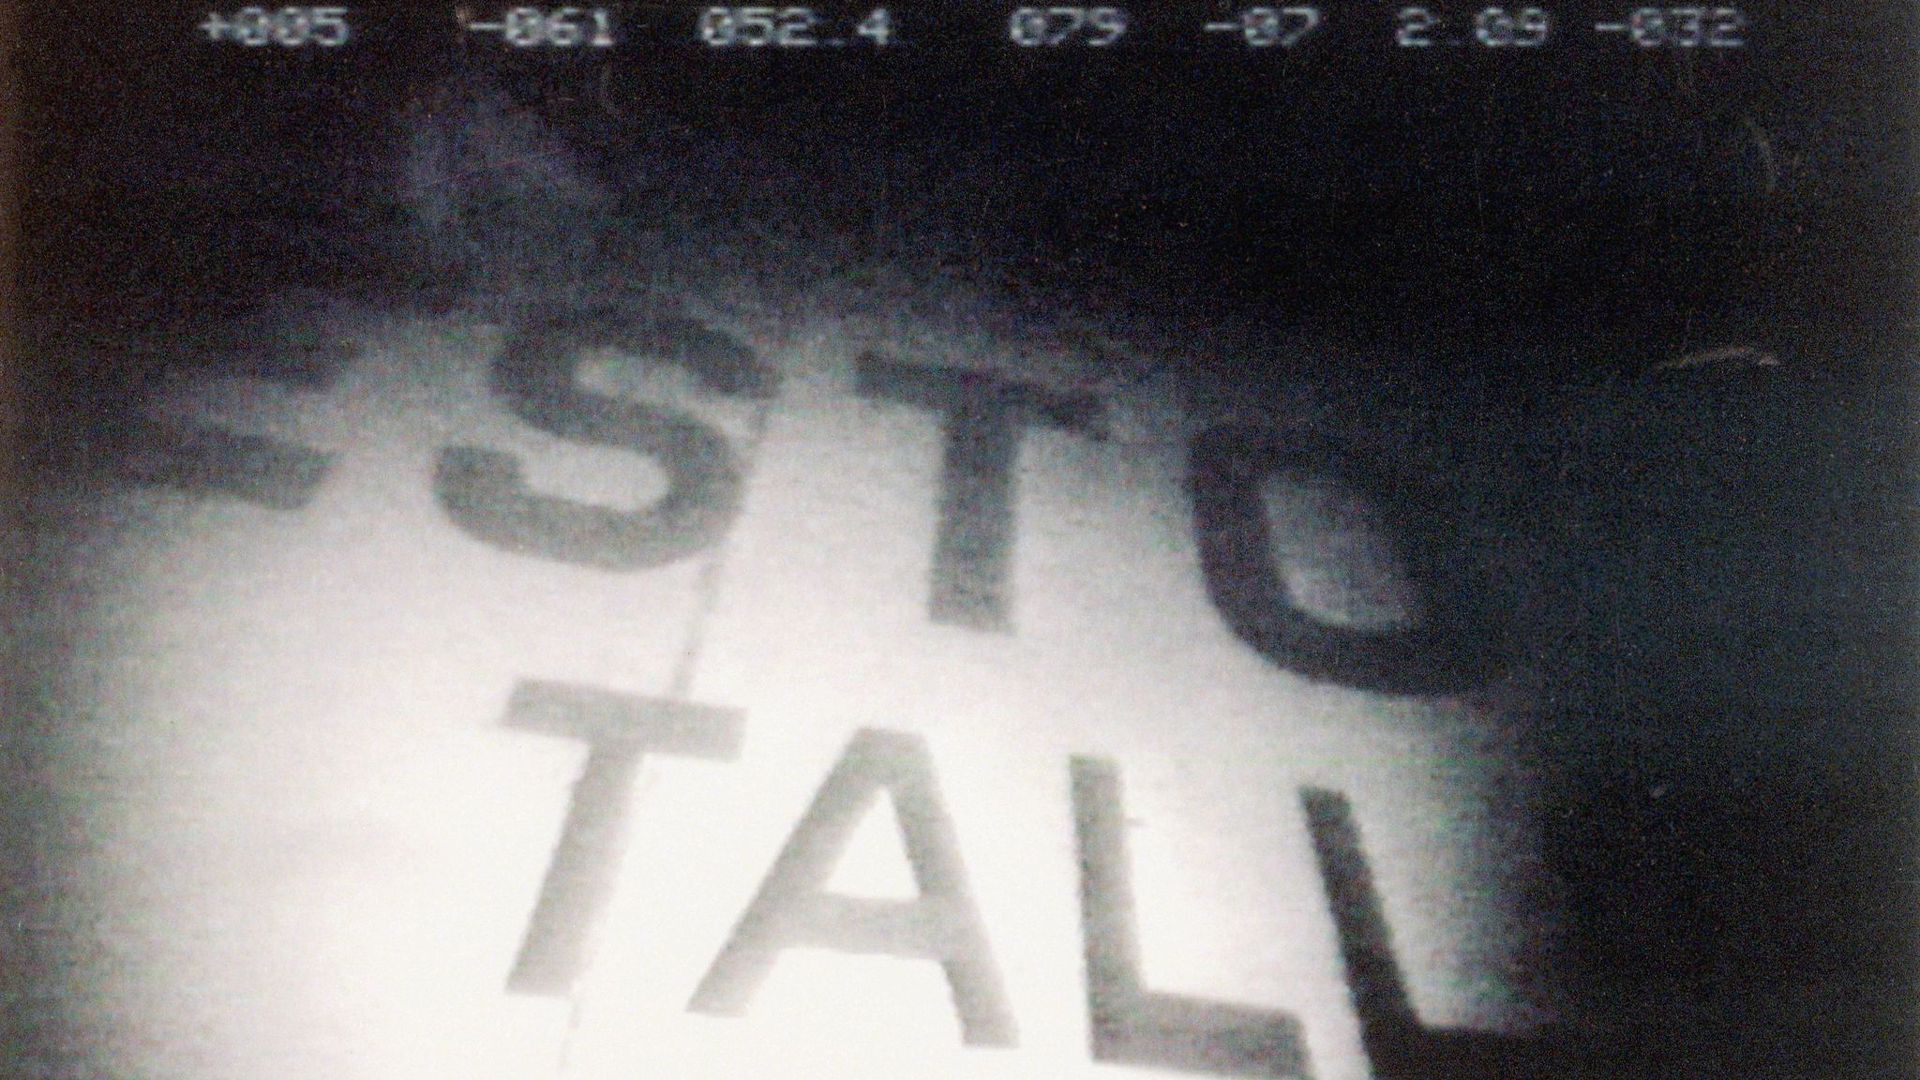 Ein Videostandbild zeigt den Schriftzug der 1994 gesunkenen Ostsee-Fähre „Estonia“, die vor der Südküste Finnlands liegt.